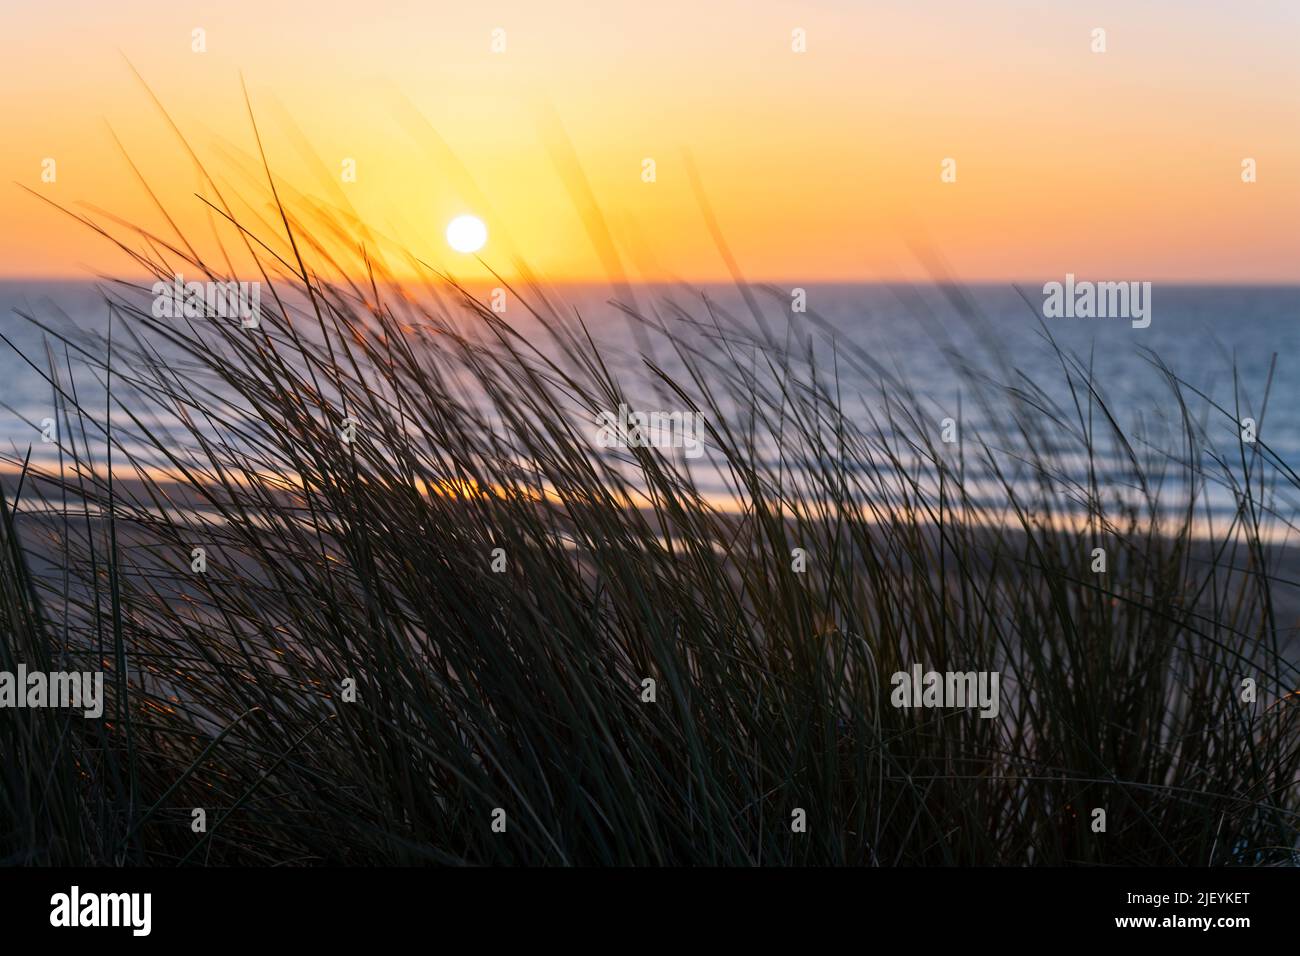 Am Nordseestrand von Oostende (Ostende), Flandern, Belgien, grasen bei Sonnenuntergang Sanddünen im Wind. Stockfoto